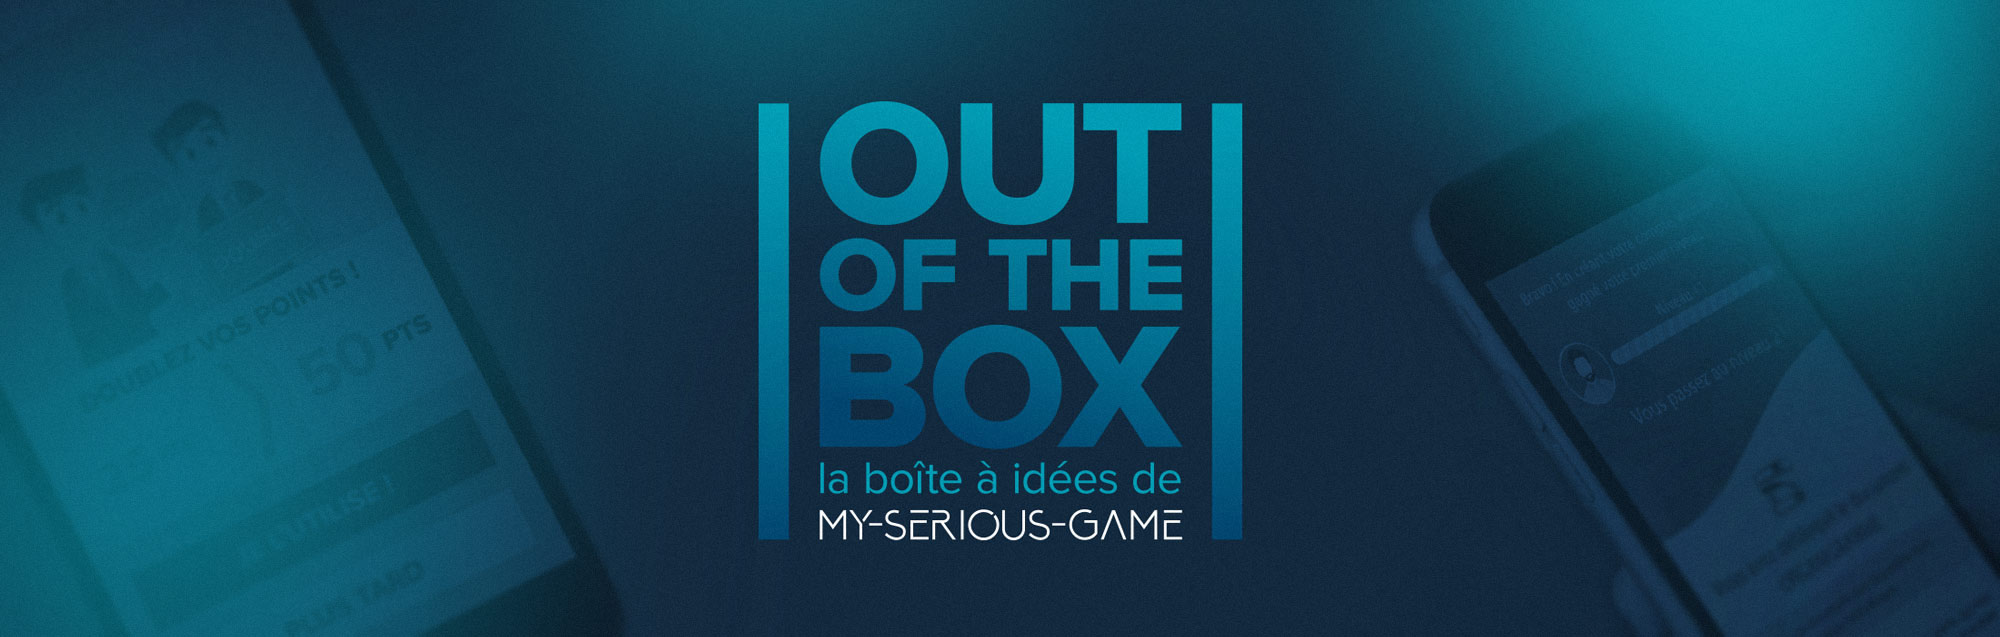 OUT OF THE BOX – La boîte à idées de My-Serious-Game